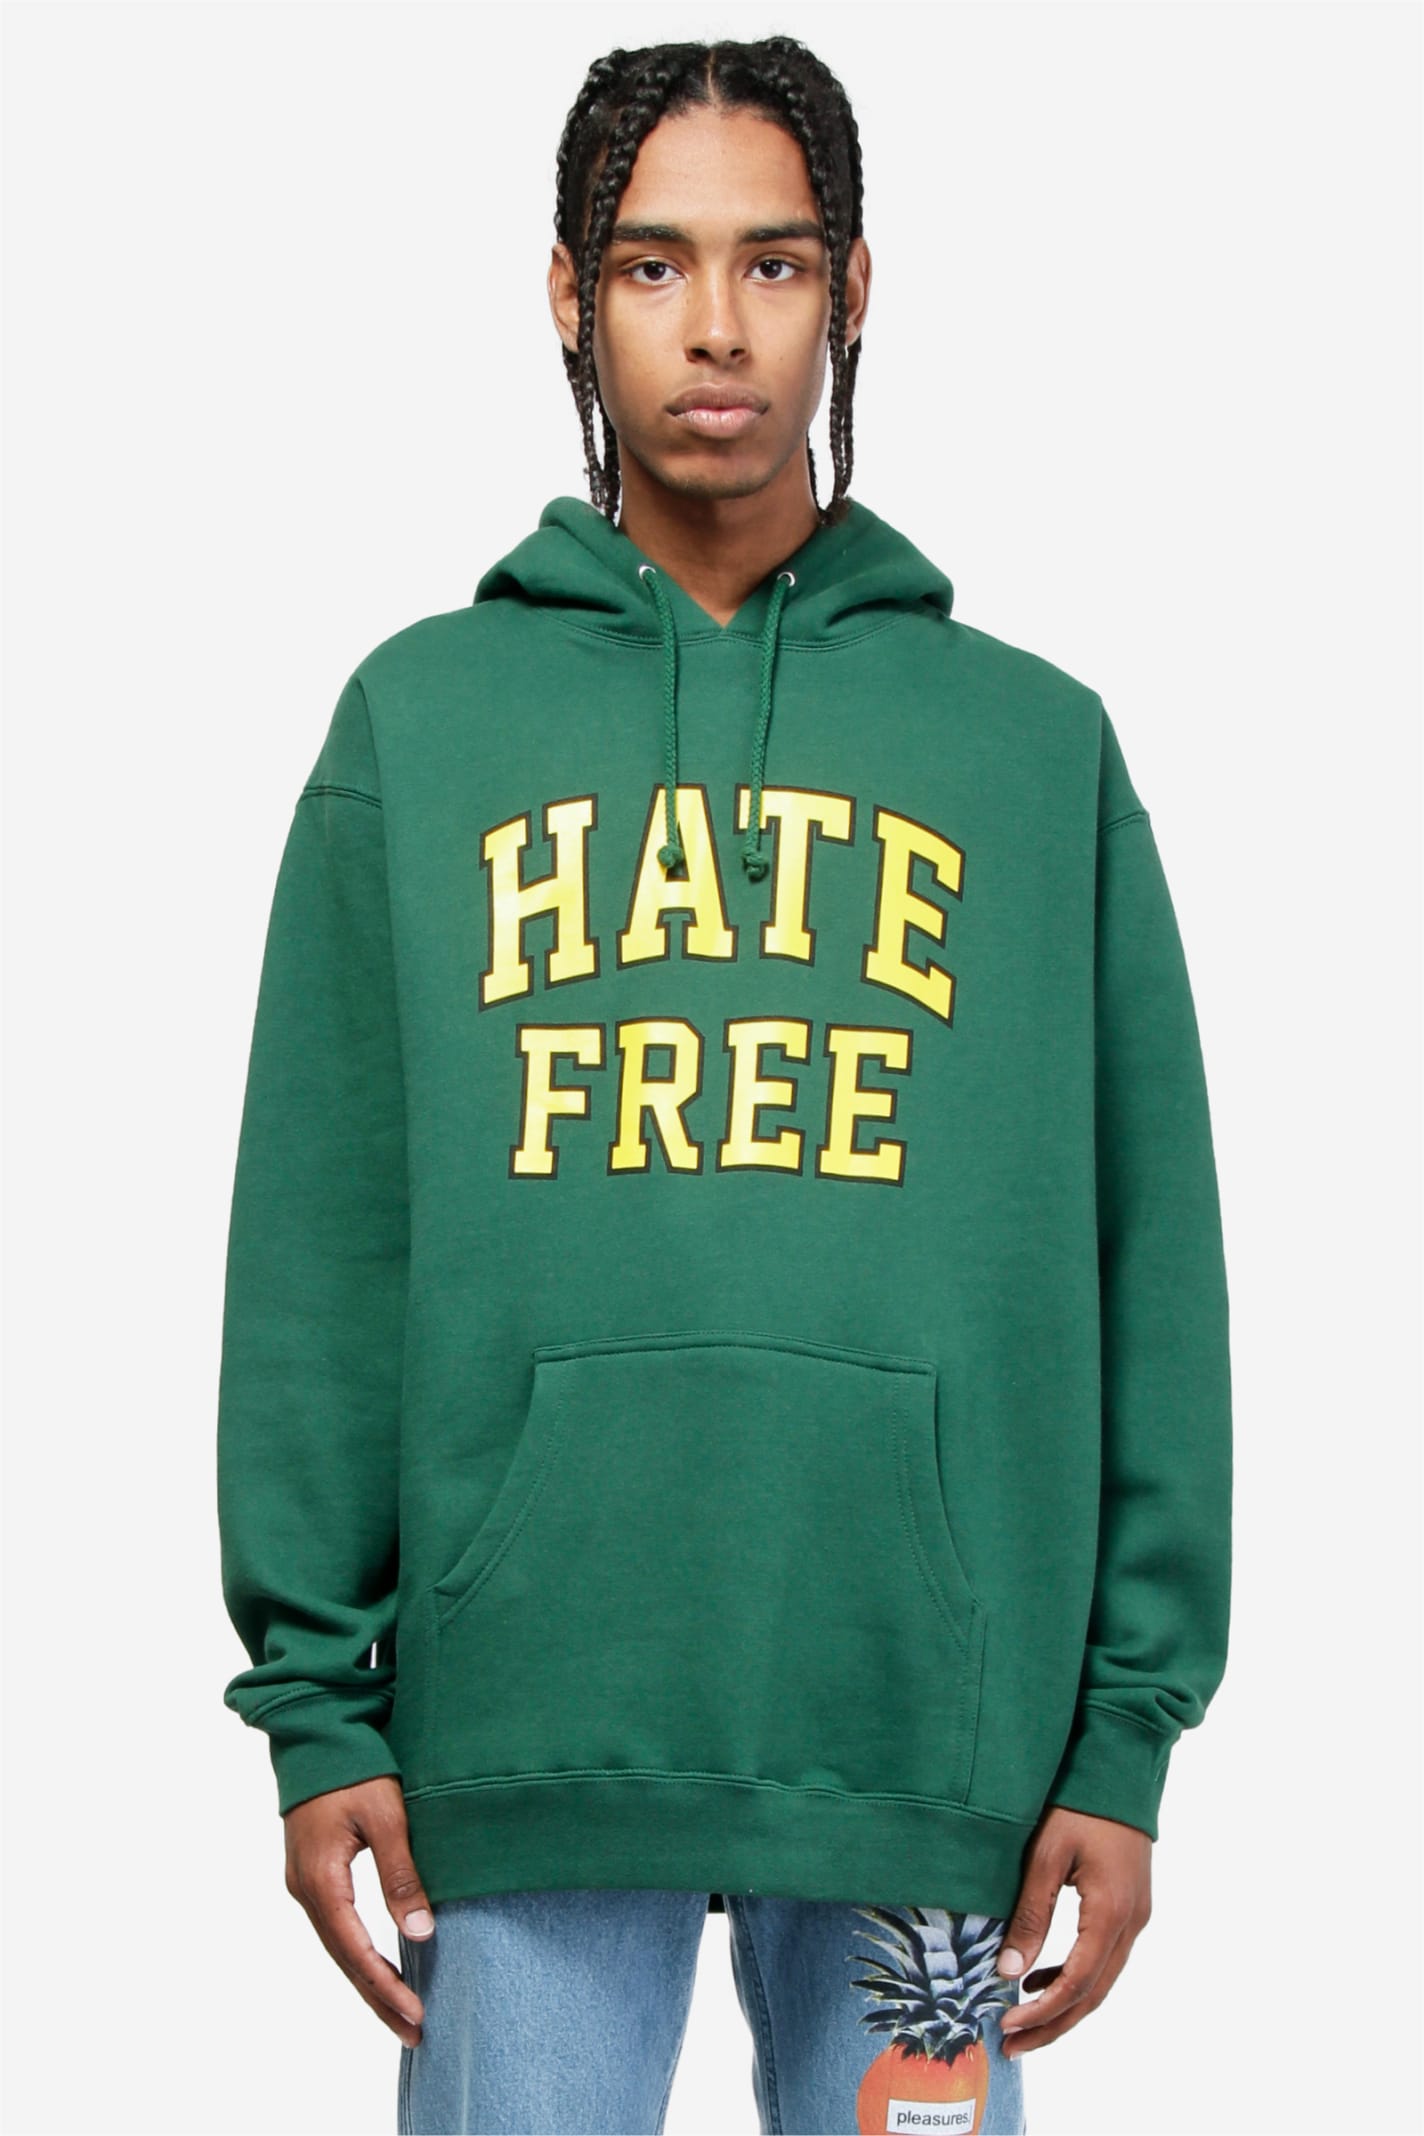 Pleasures Hate Free Hoody Sweatshirt